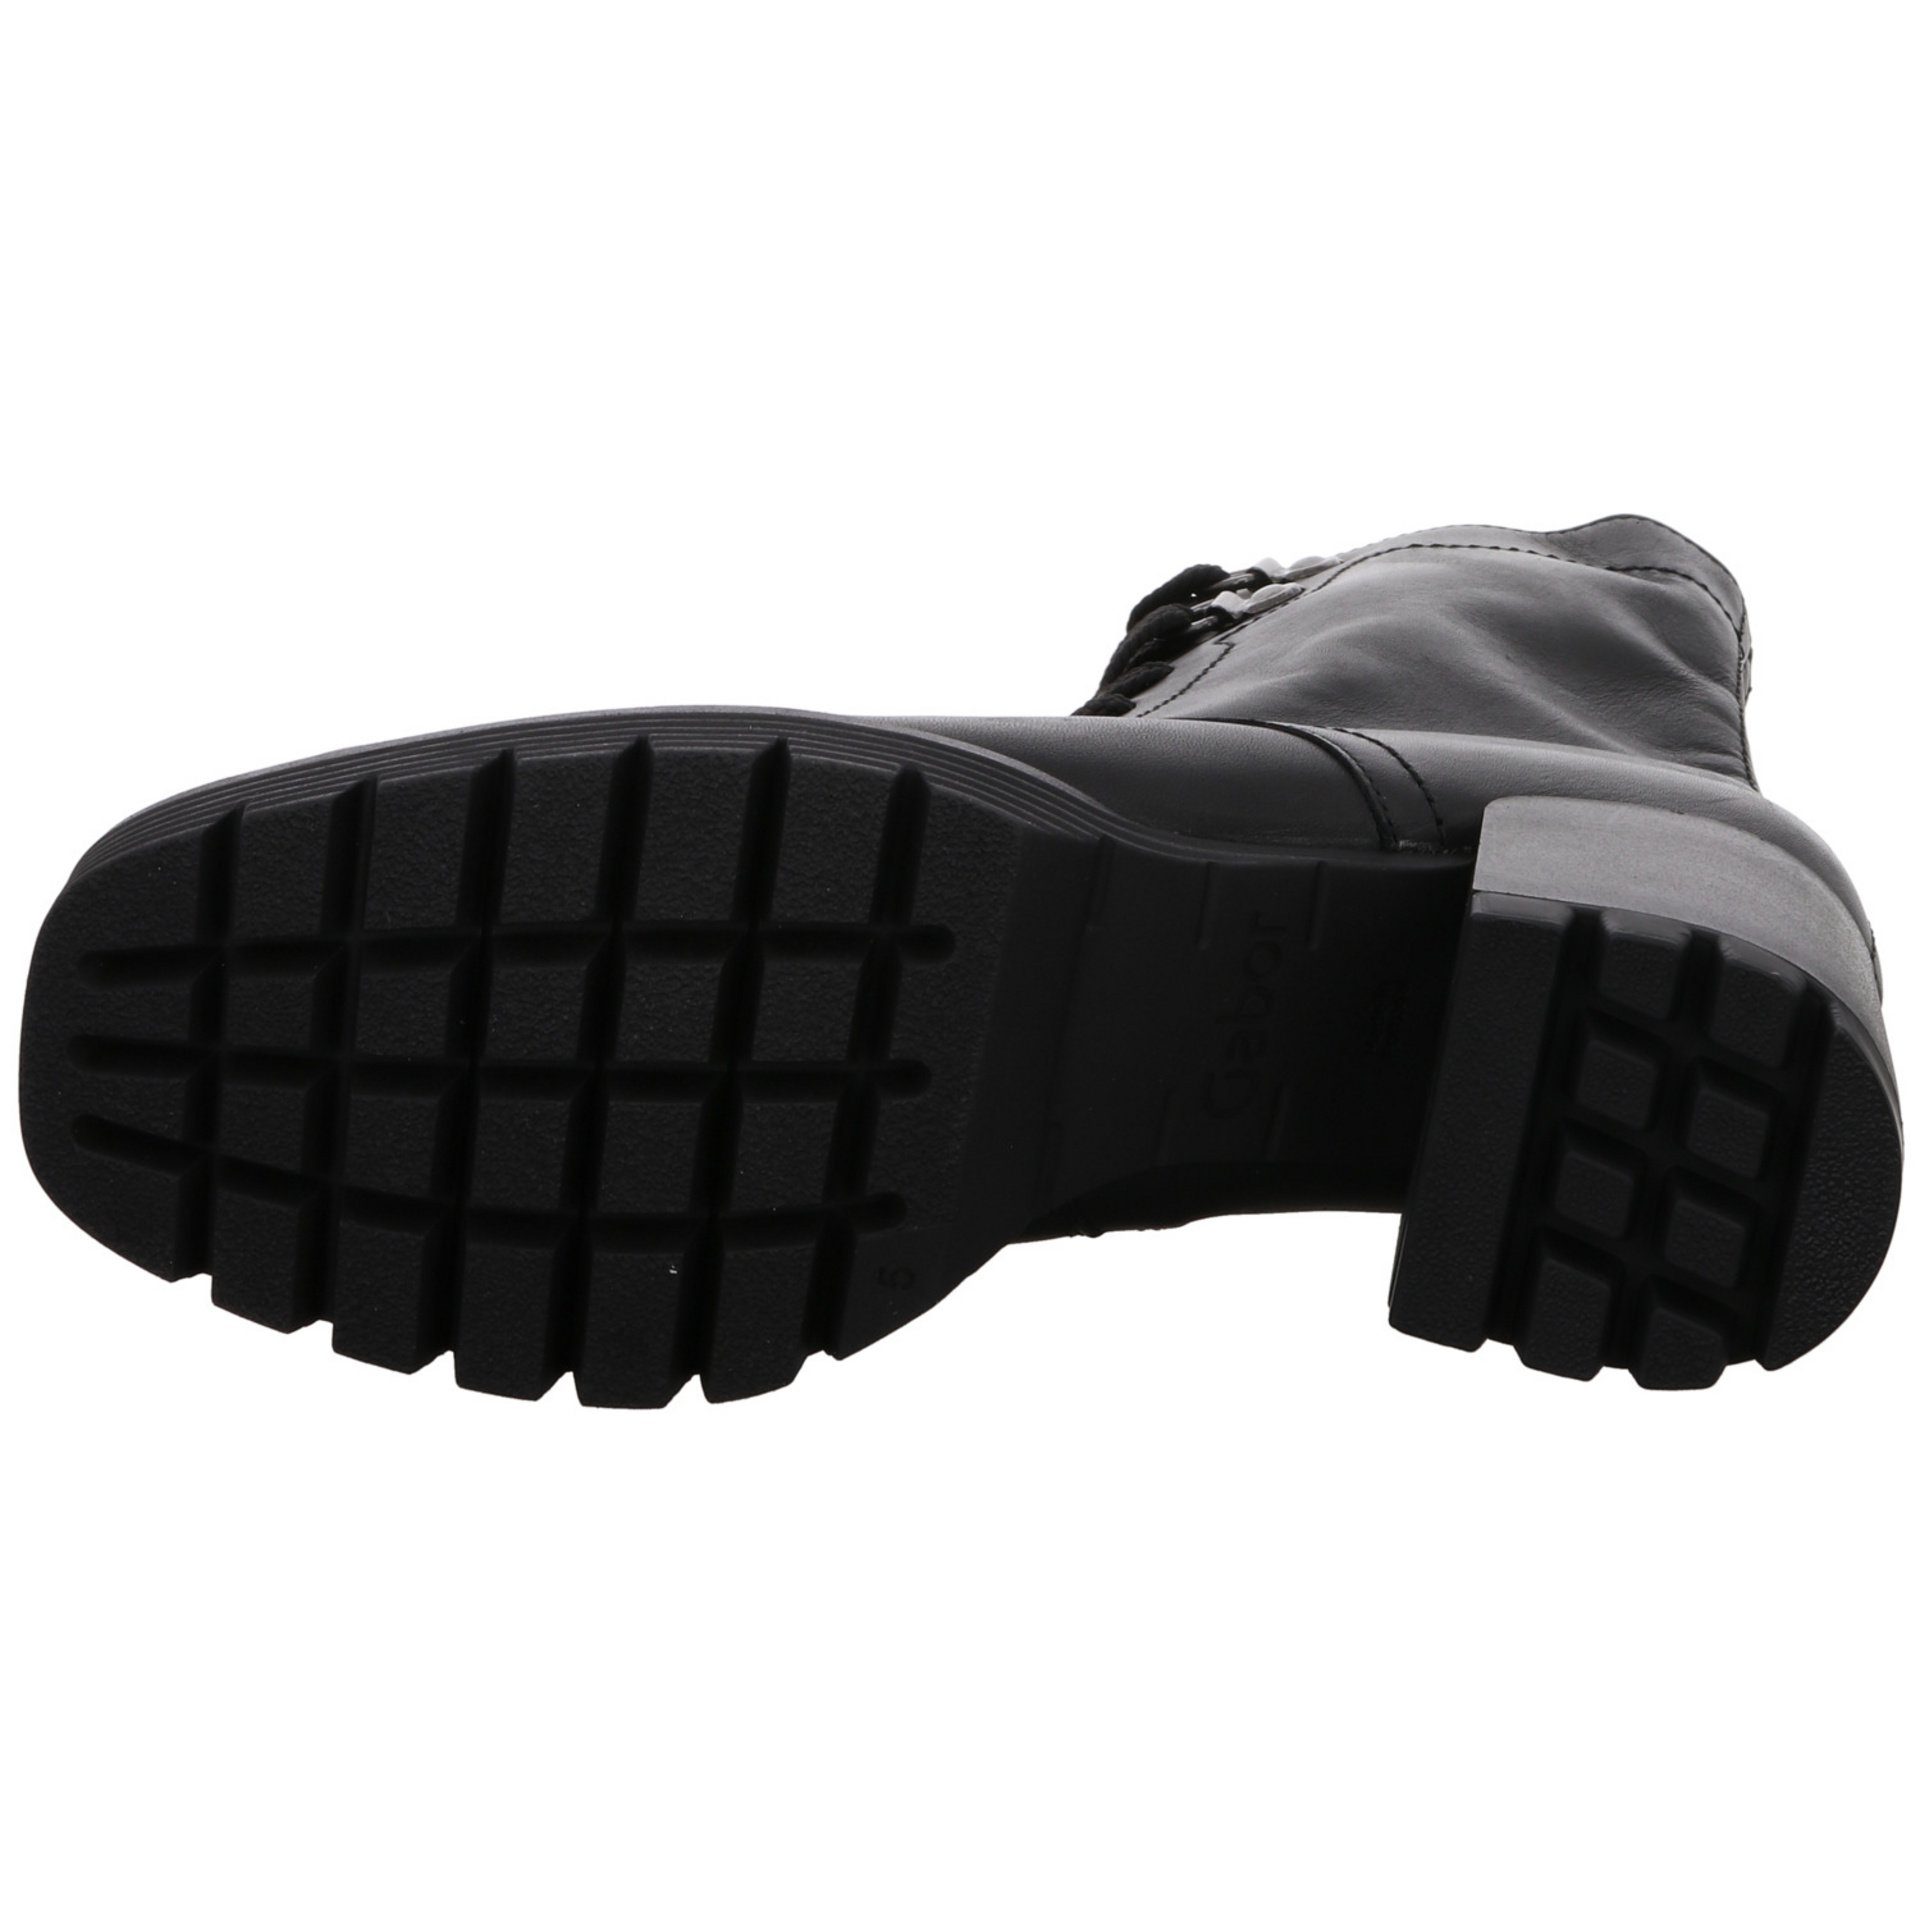 Gabor Damen Stiefeletten Veloursleder schwarz (Micro) Schnürstiefelette Schuhe Schnürstiefelette